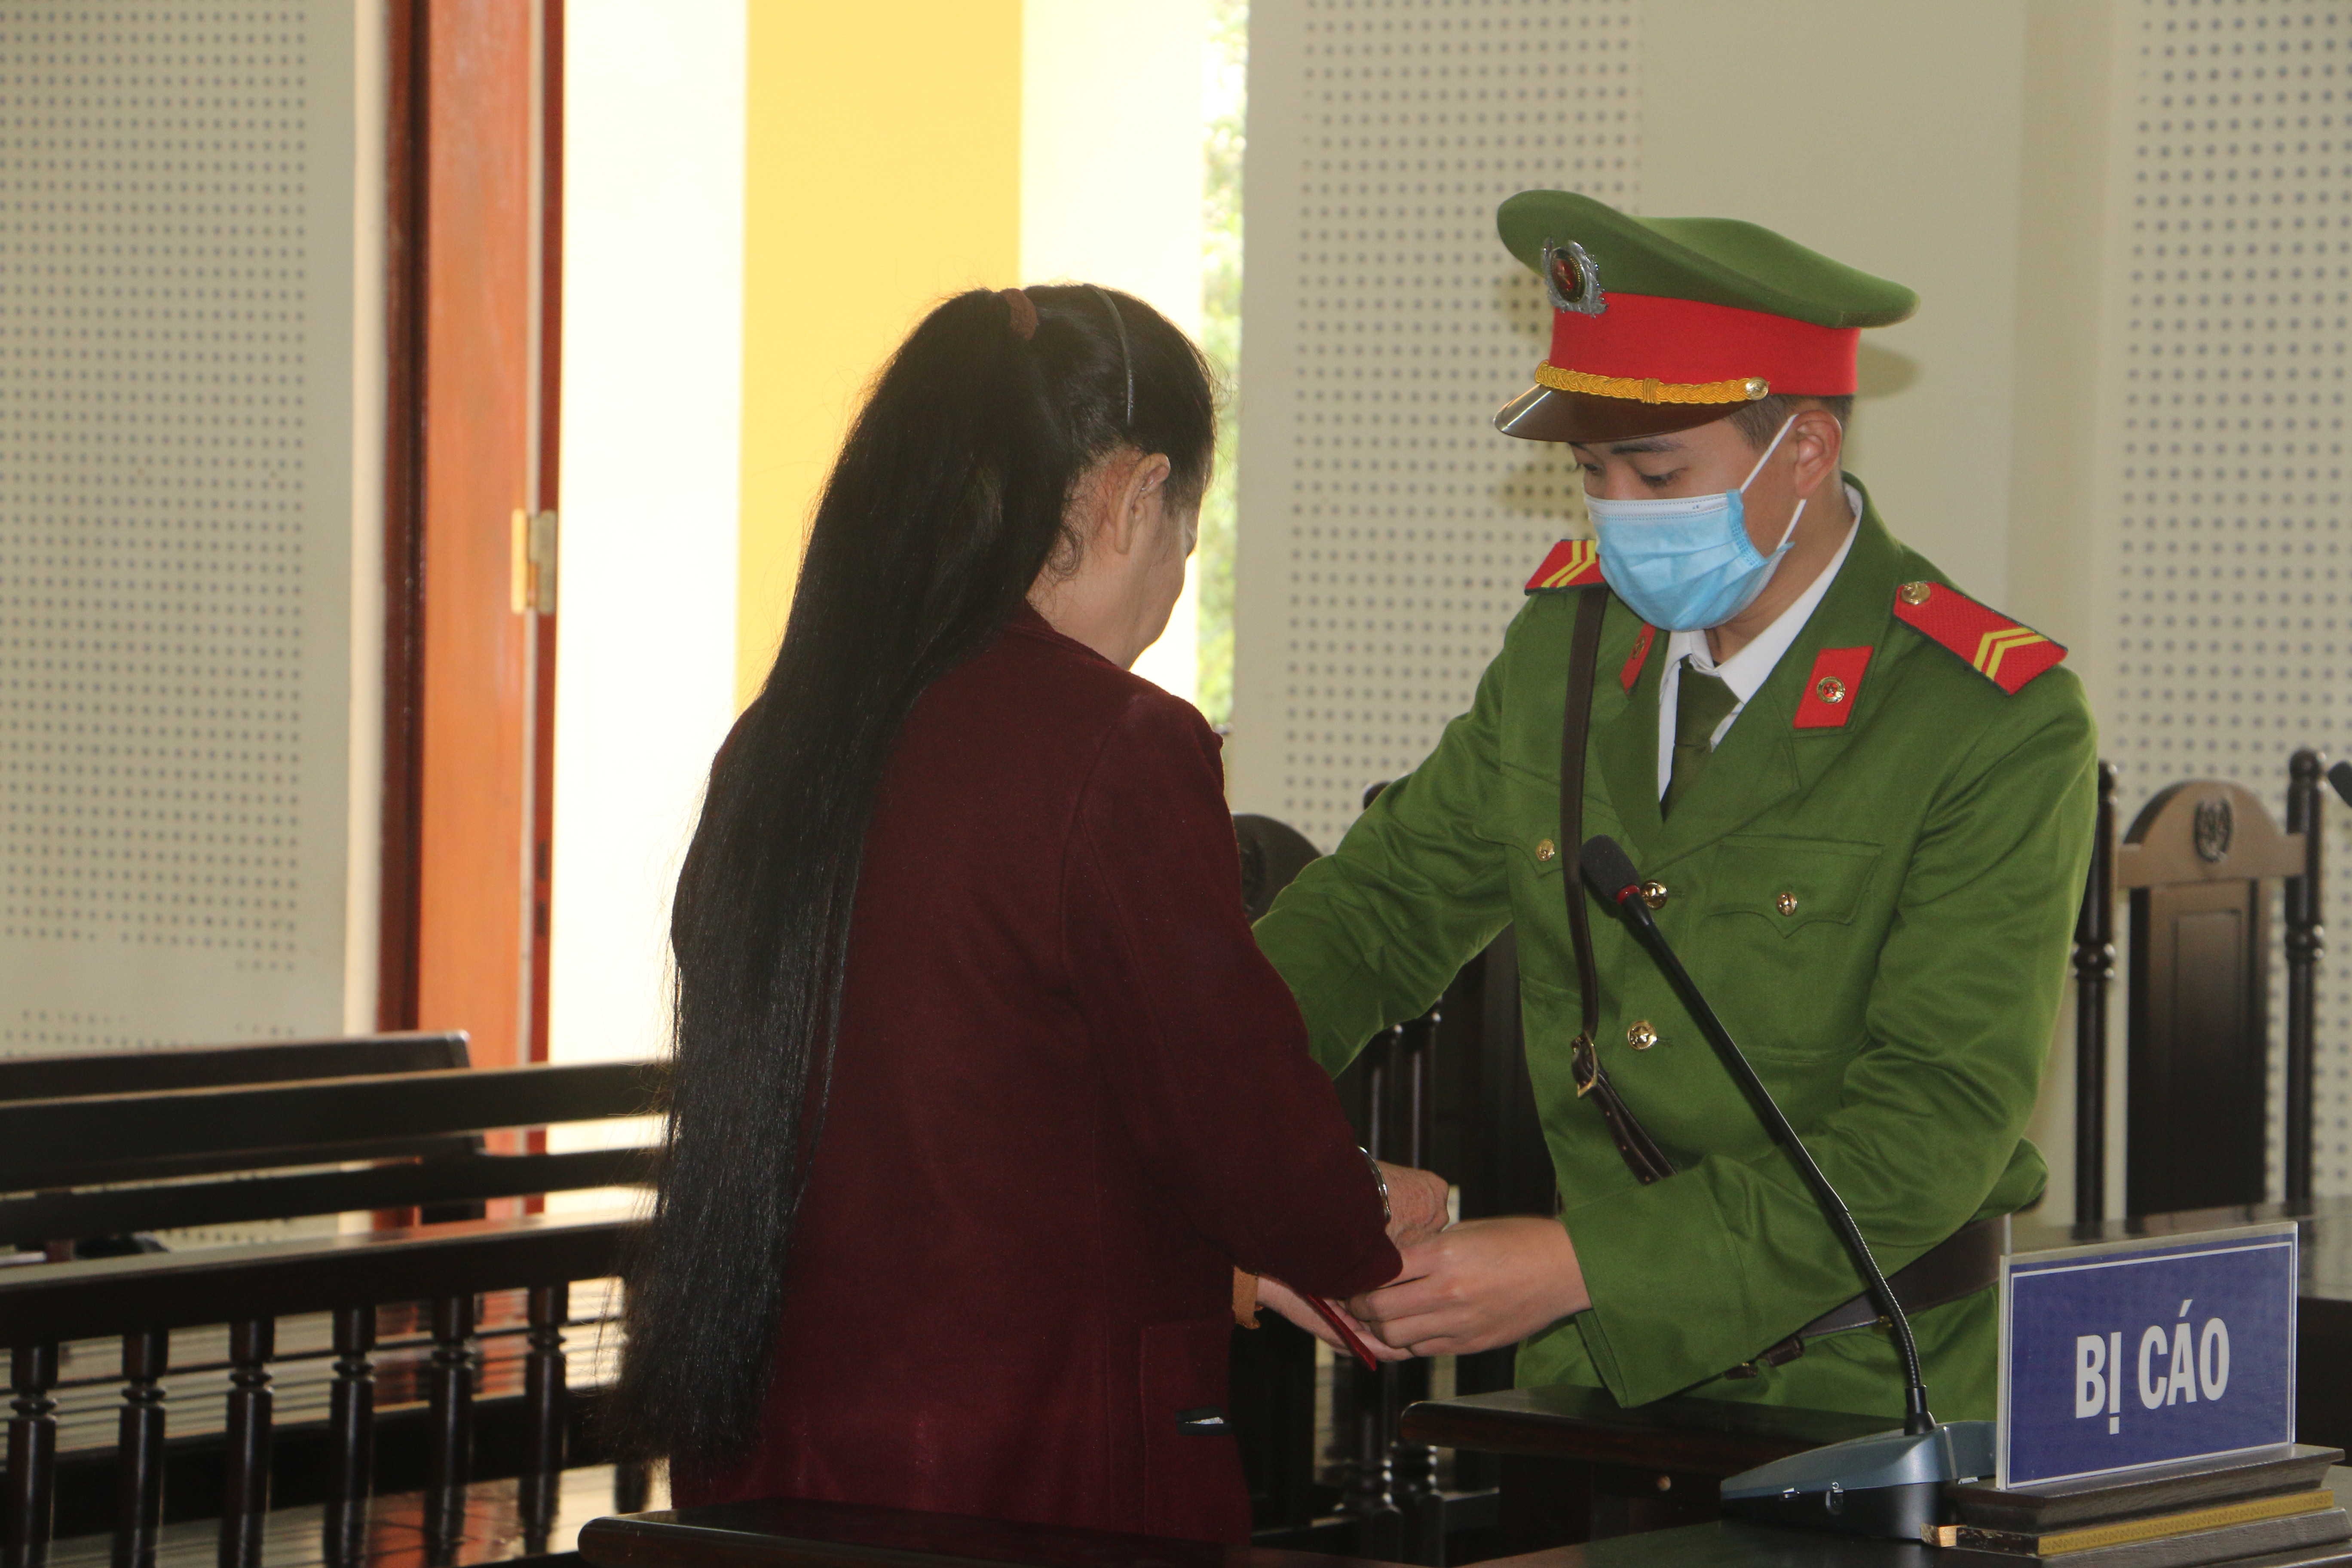 Sau phiên tòa, bị cáo Hoa được giao cho lực lượng công an để vè thi hành án. Ảnh: An Quỳnh.